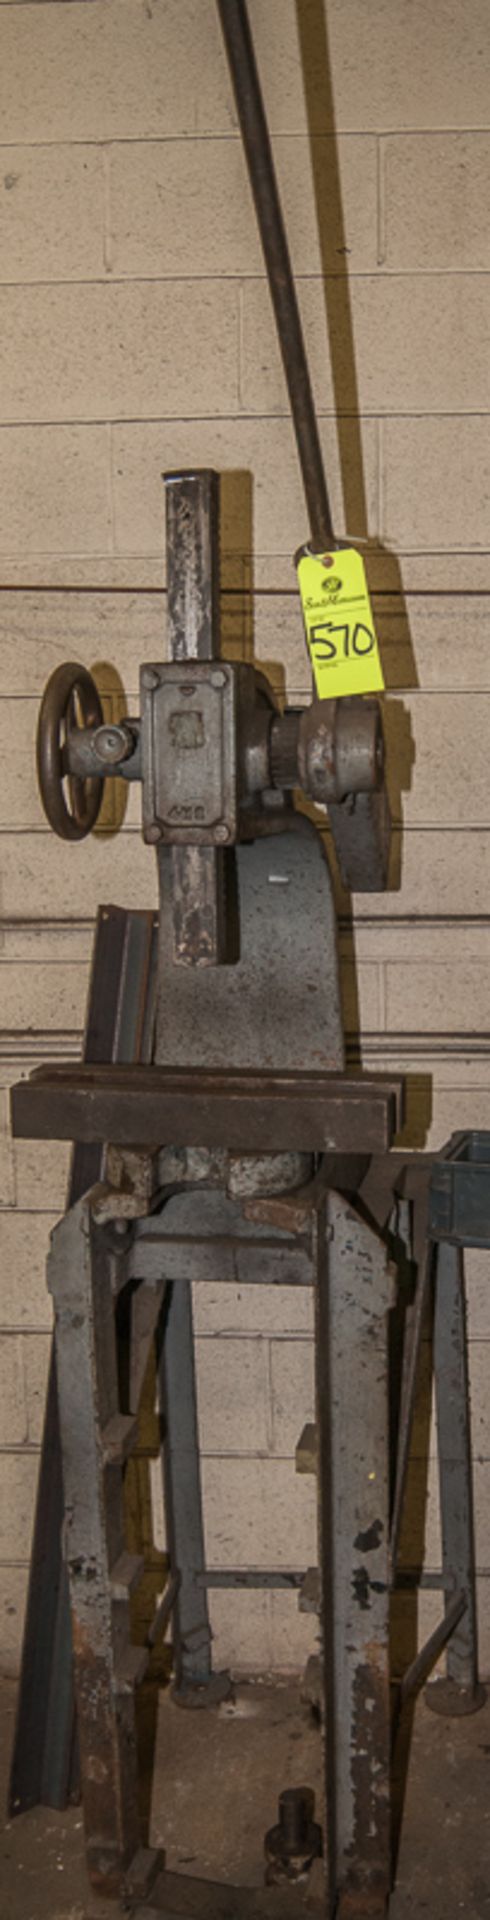 Dake M/N 3A arbor press on heavy duty floor stand